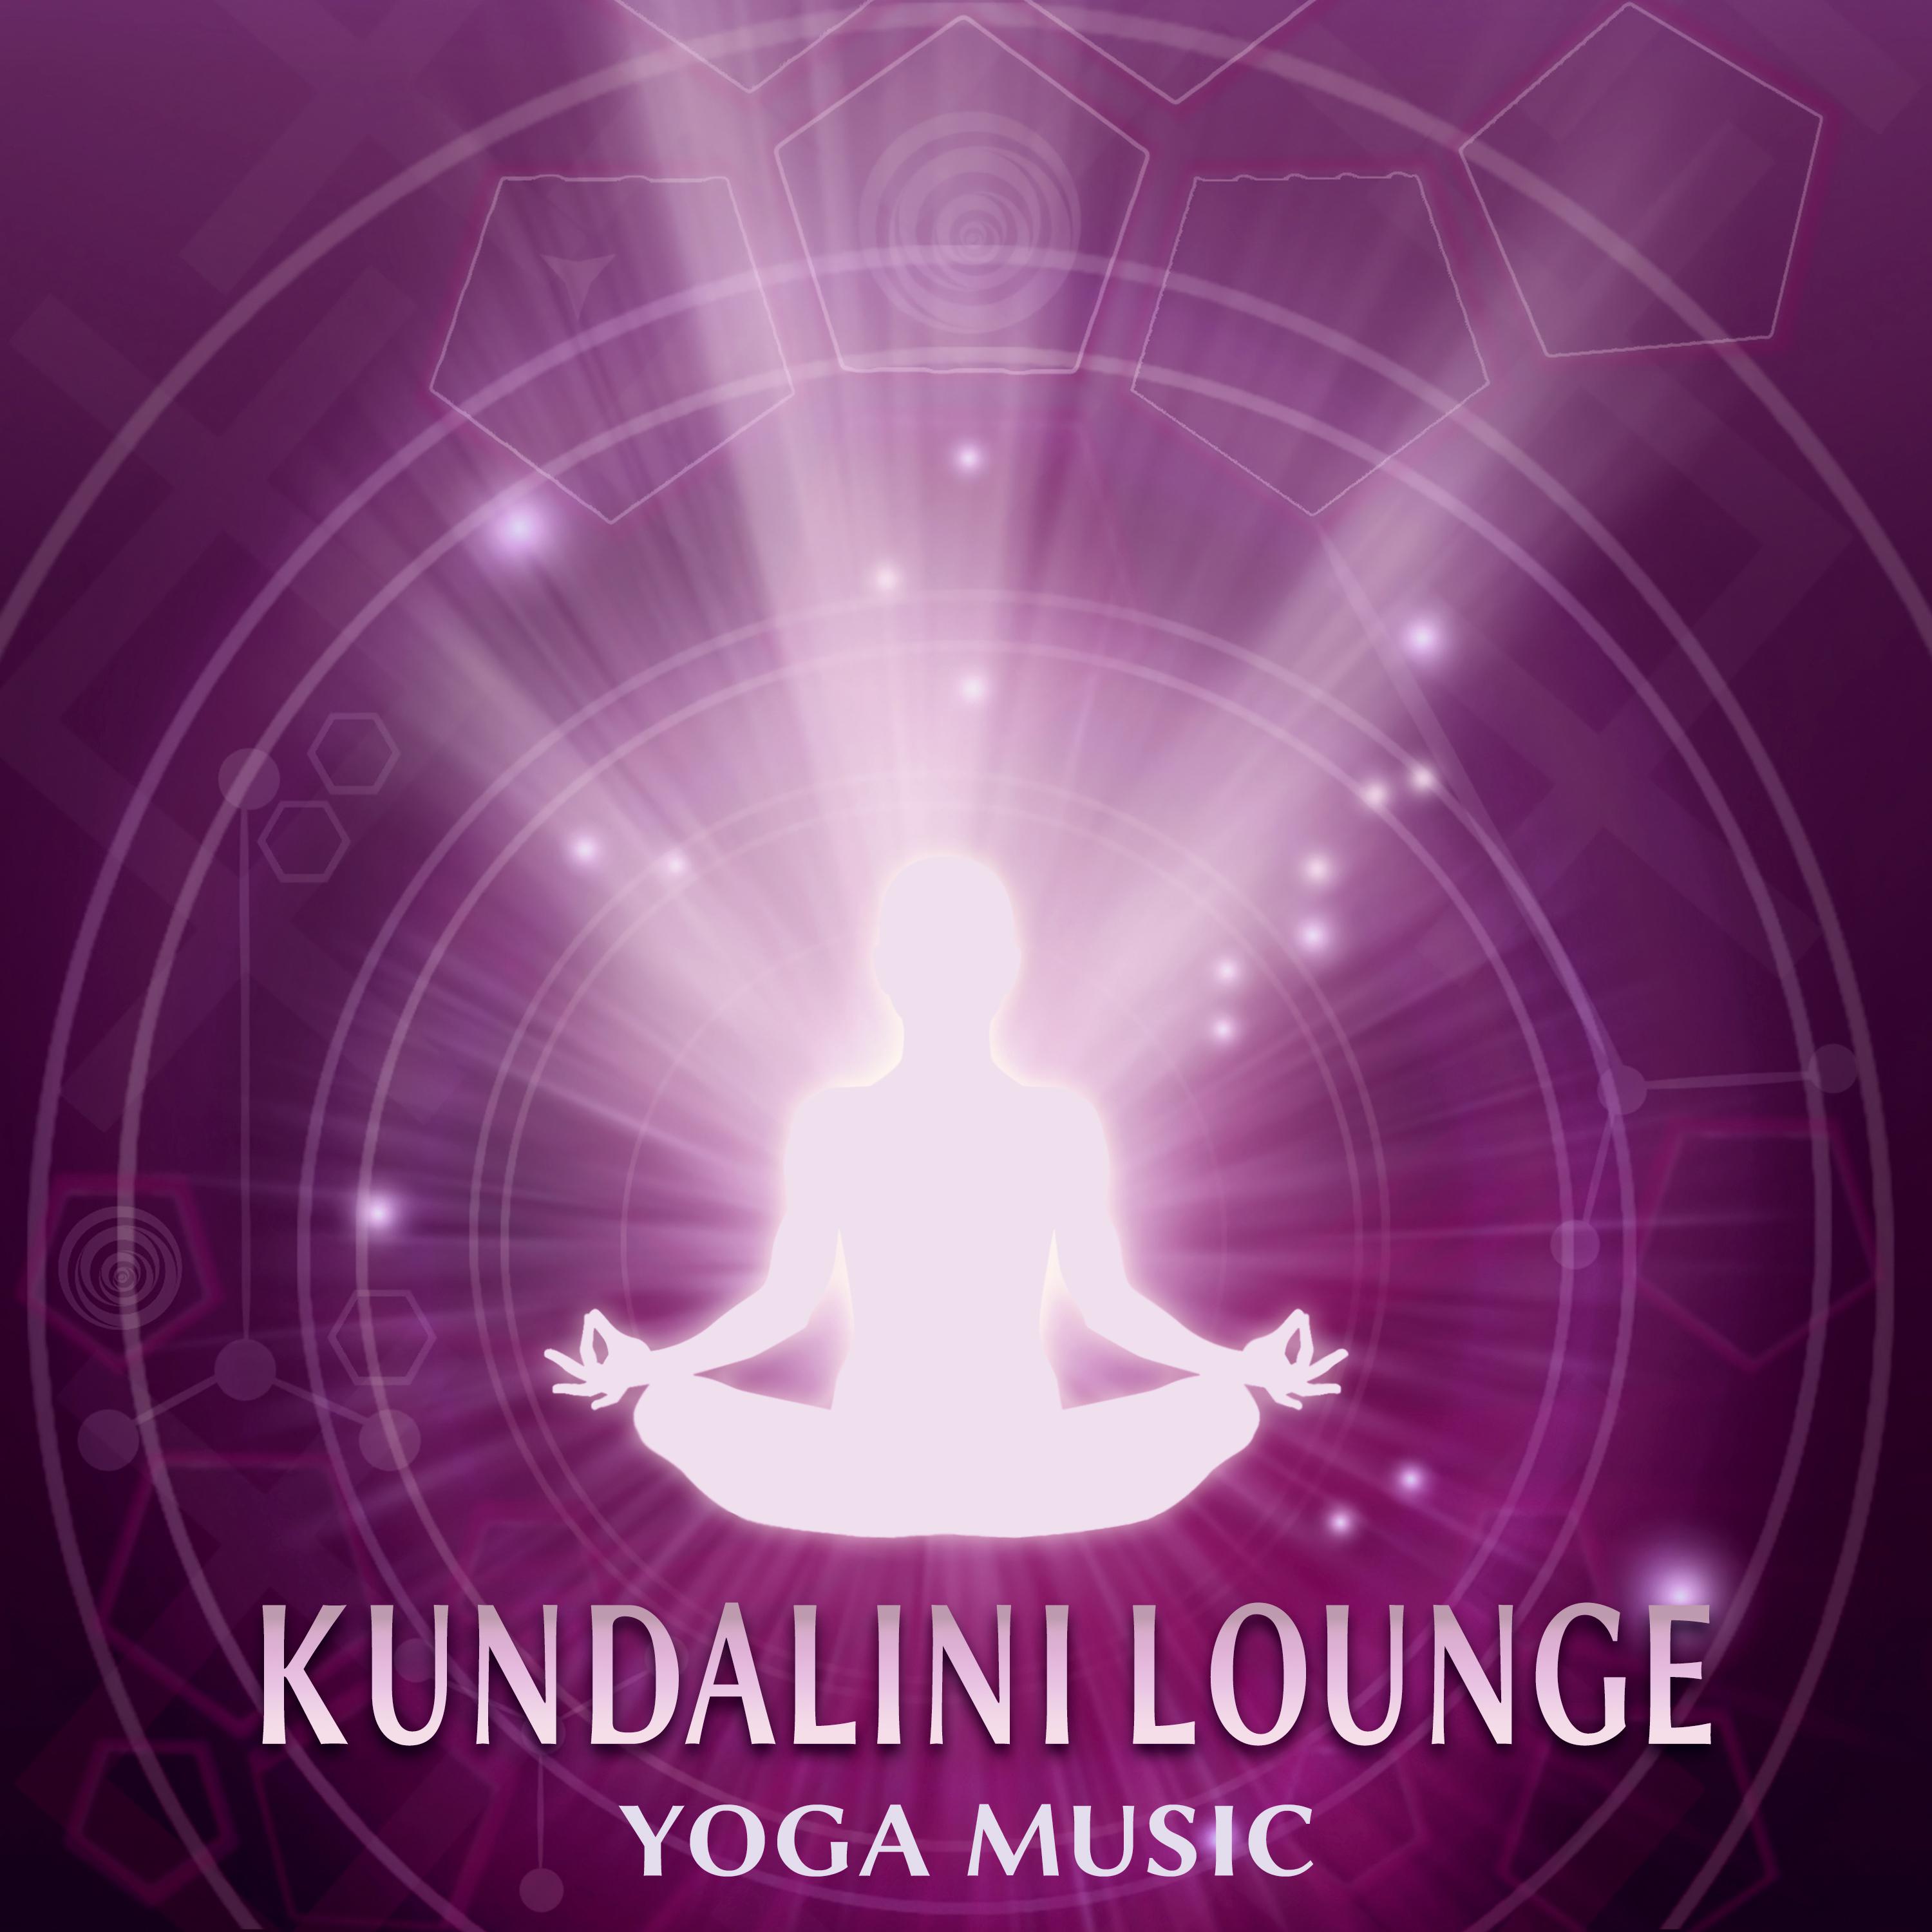 Kundalini Lounge – Yoga Music